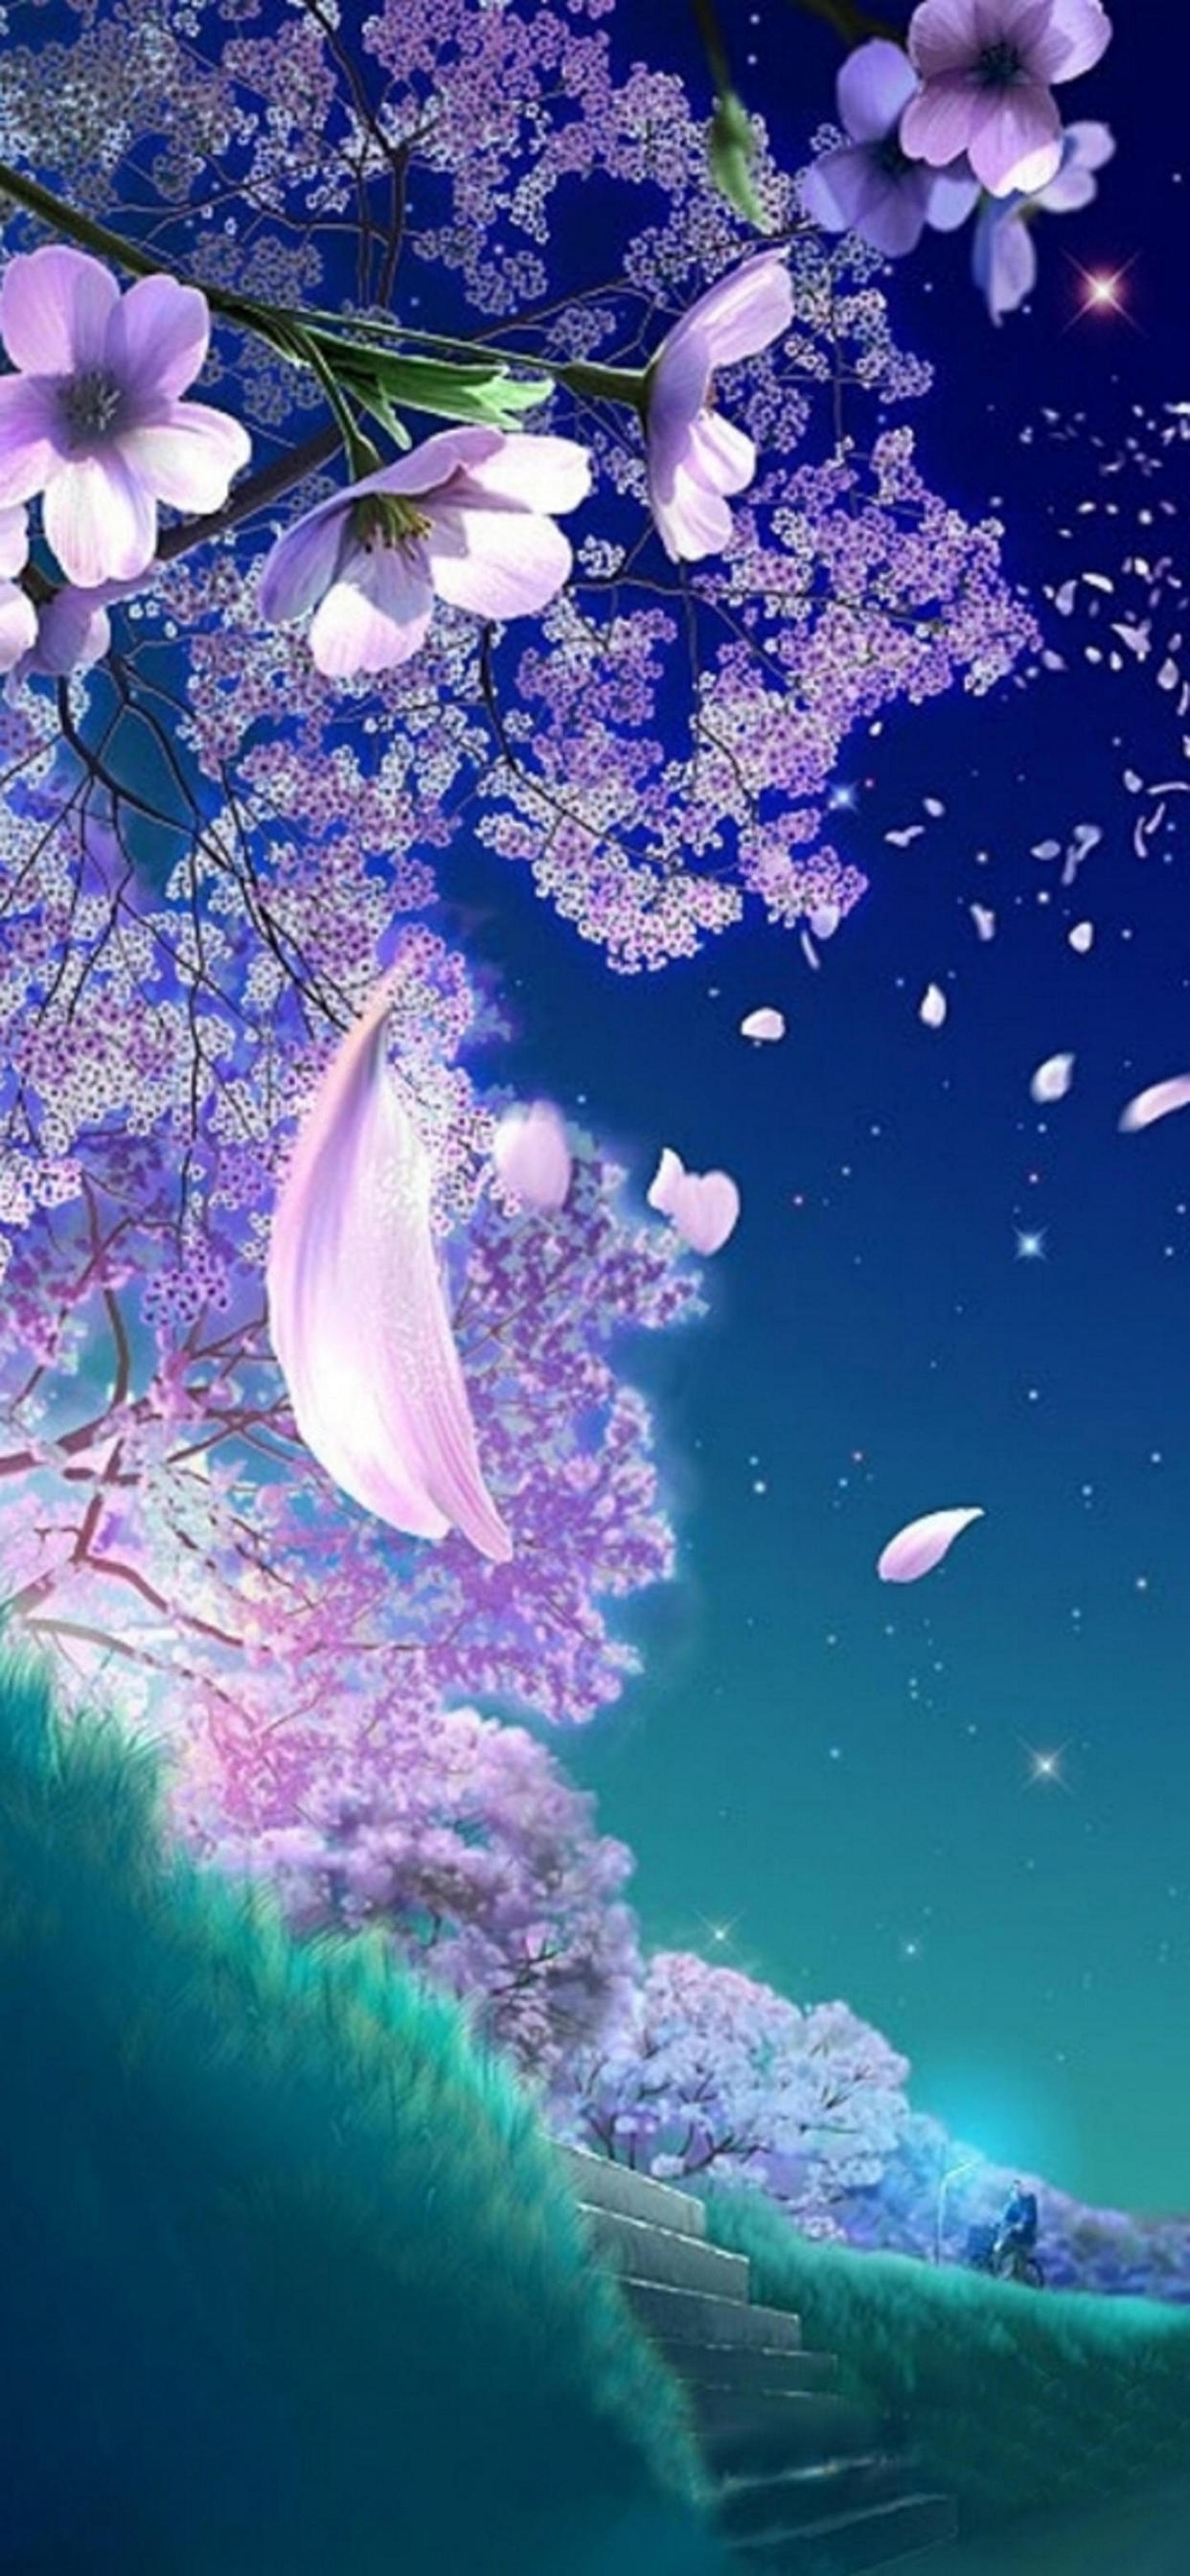 舞い散る桜の花びらのイラスト Iphone 12 Pro Max 壁紙 待ち受け Sumaran